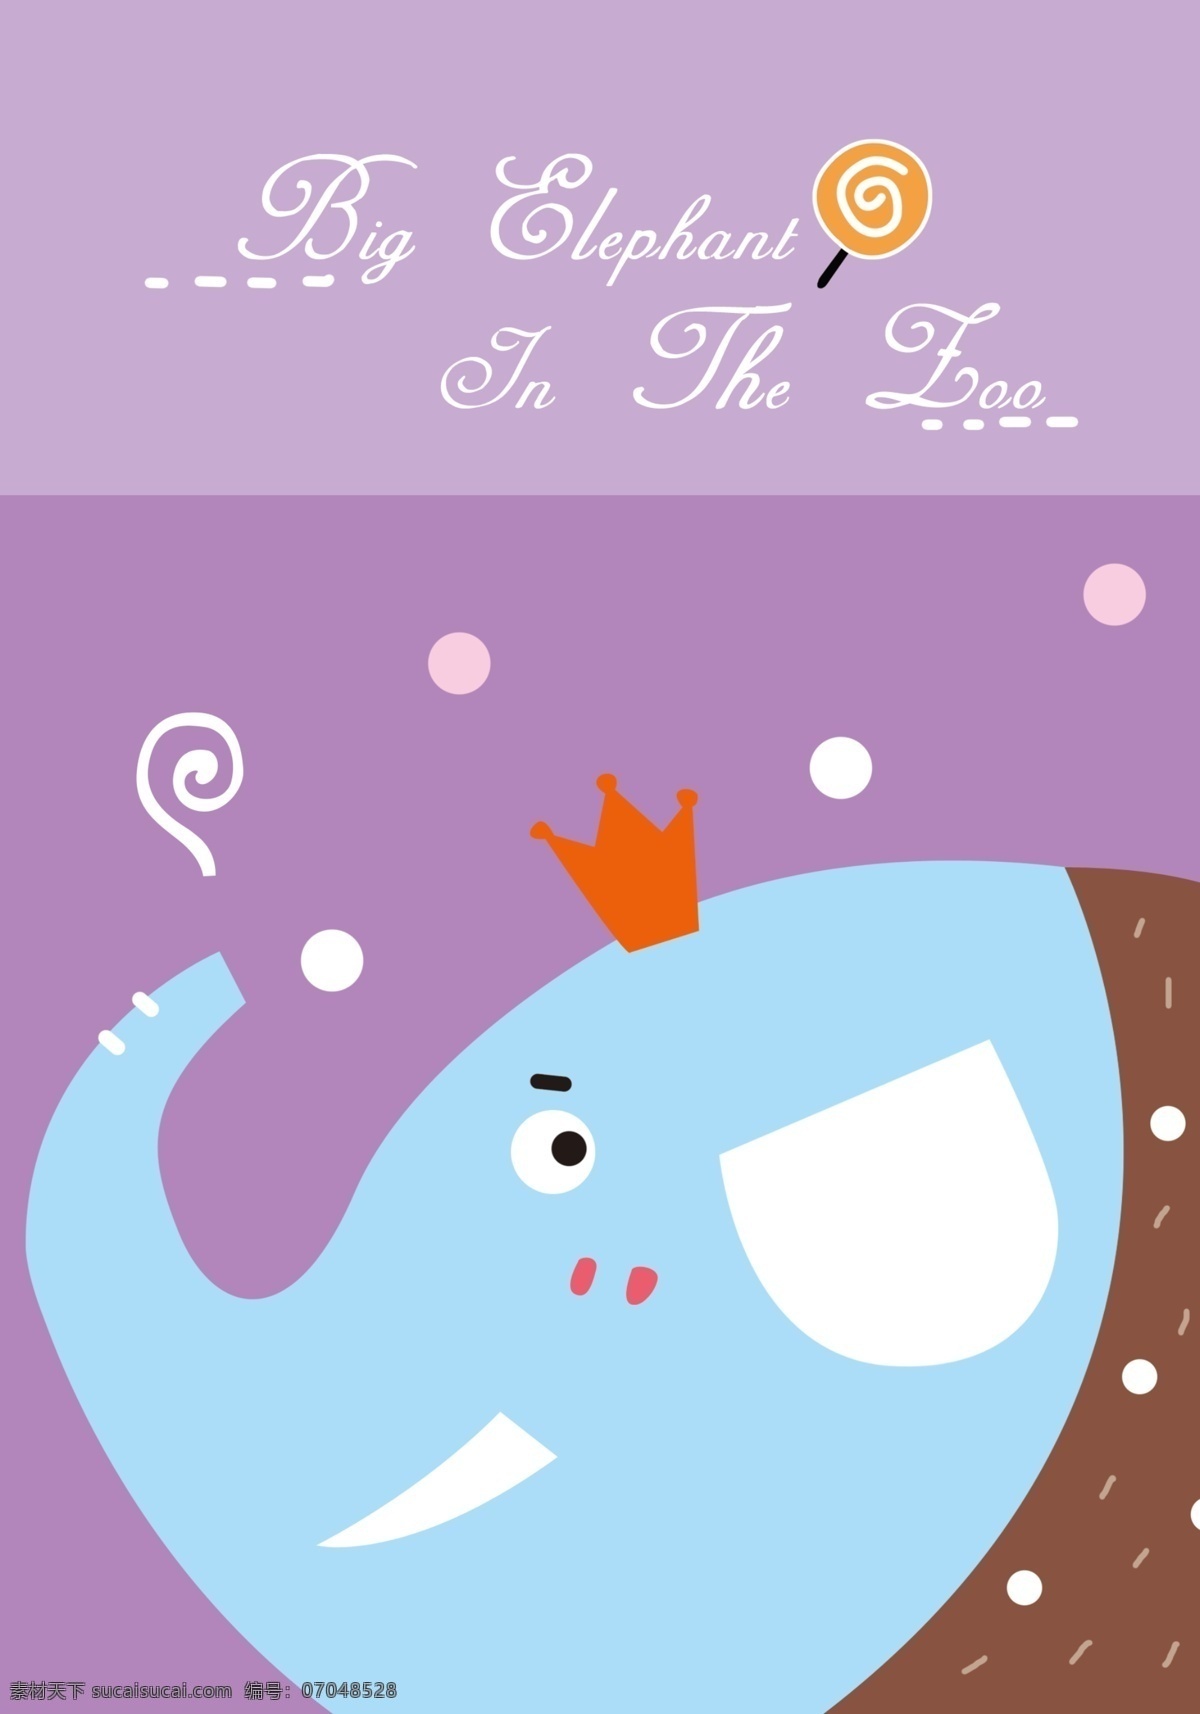 可爱 动物 卡通 本本 童话 本子 画册 封面 大象 皇冠 表情 棒棒糖 画册设计